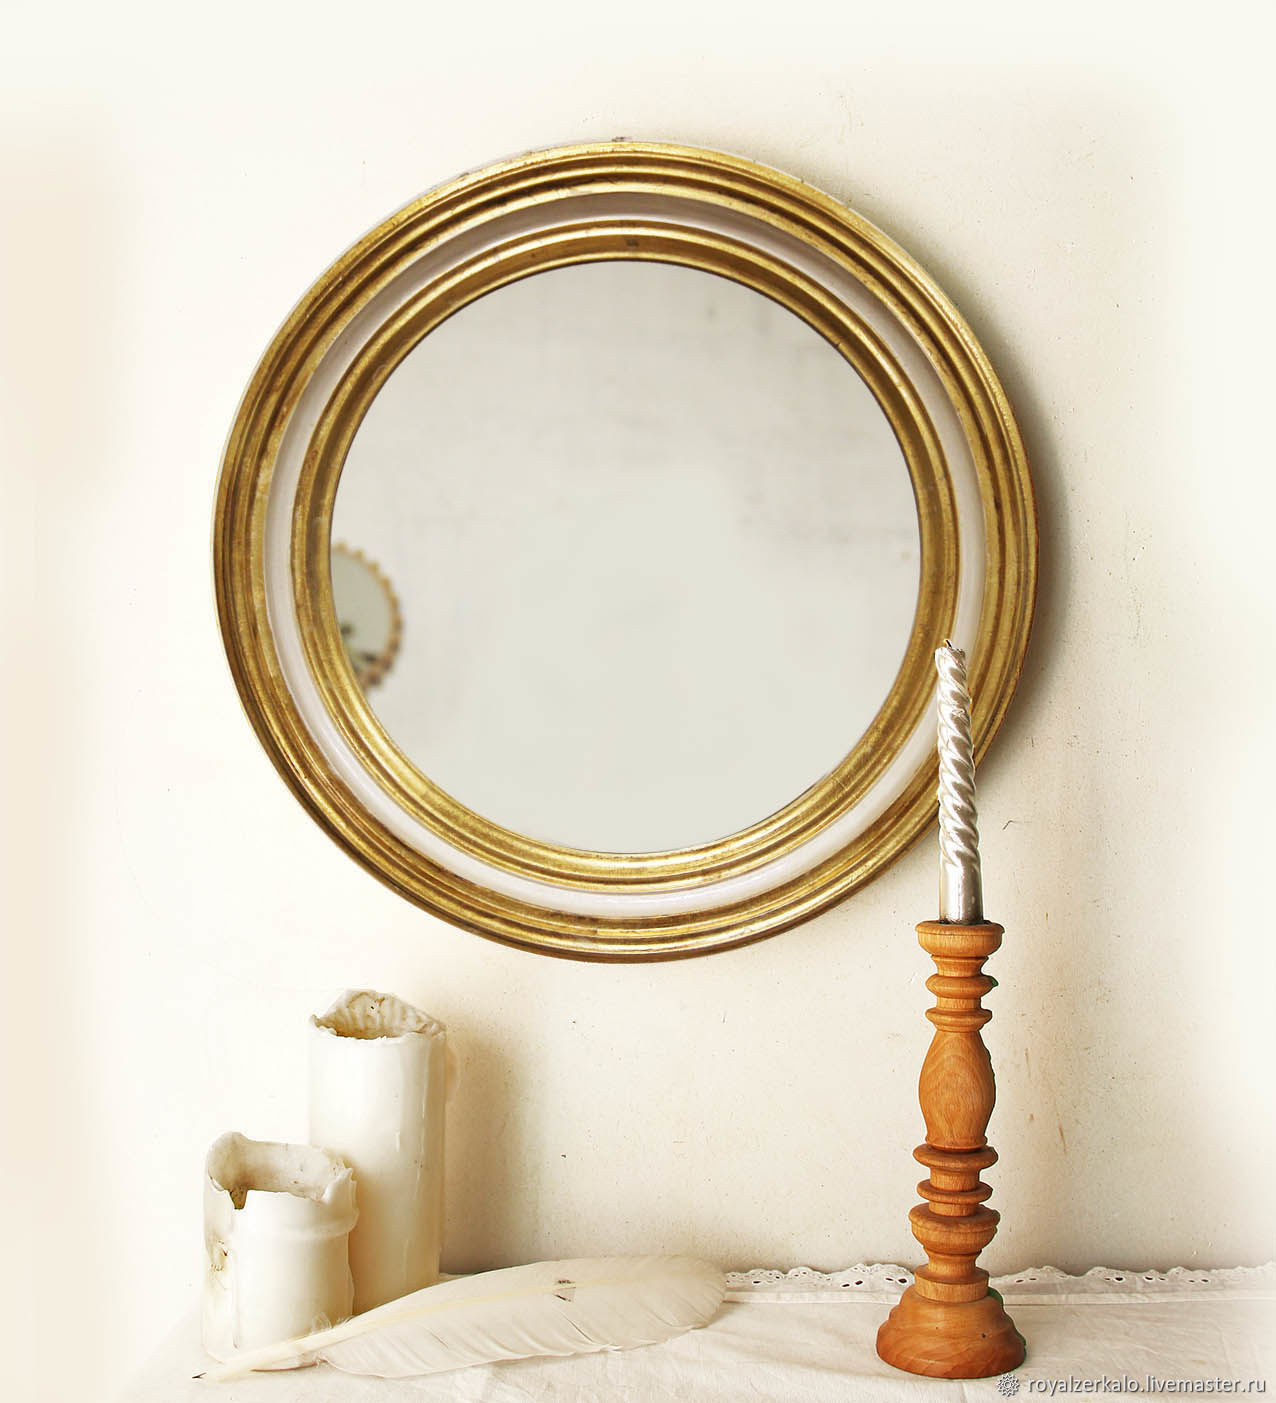 Настенное зеркало в спальне. ARTSOUL Brenta lll 1200 круглое зеркало. Lu/зеркало кругл. В0128.000. Зеркало круглое migliore 30584 золото. Круглое зеркало в спальне.